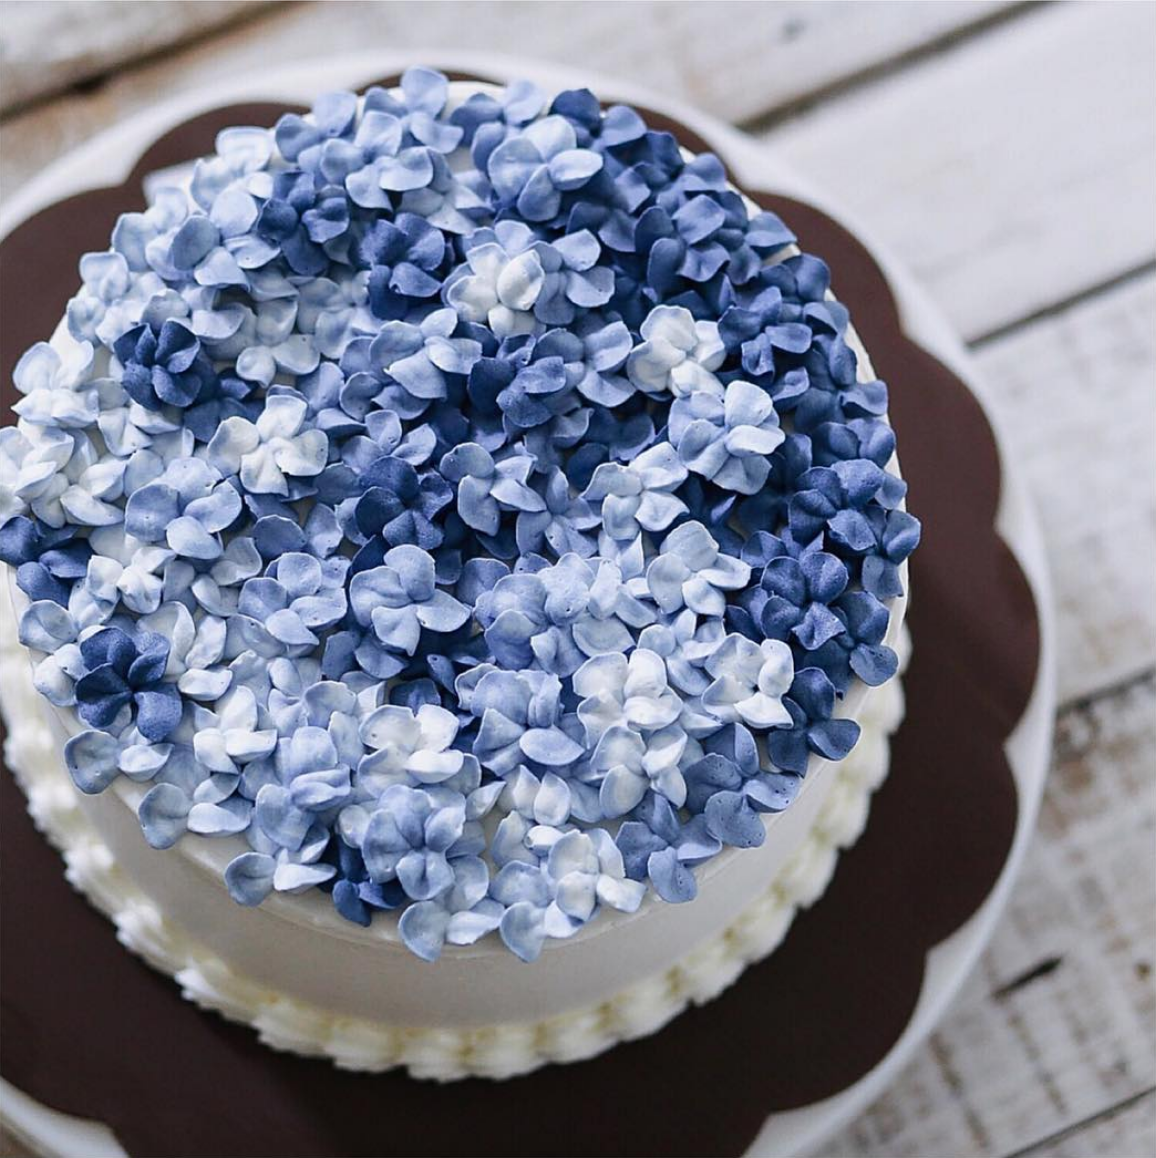 Торт с голубыми цветами